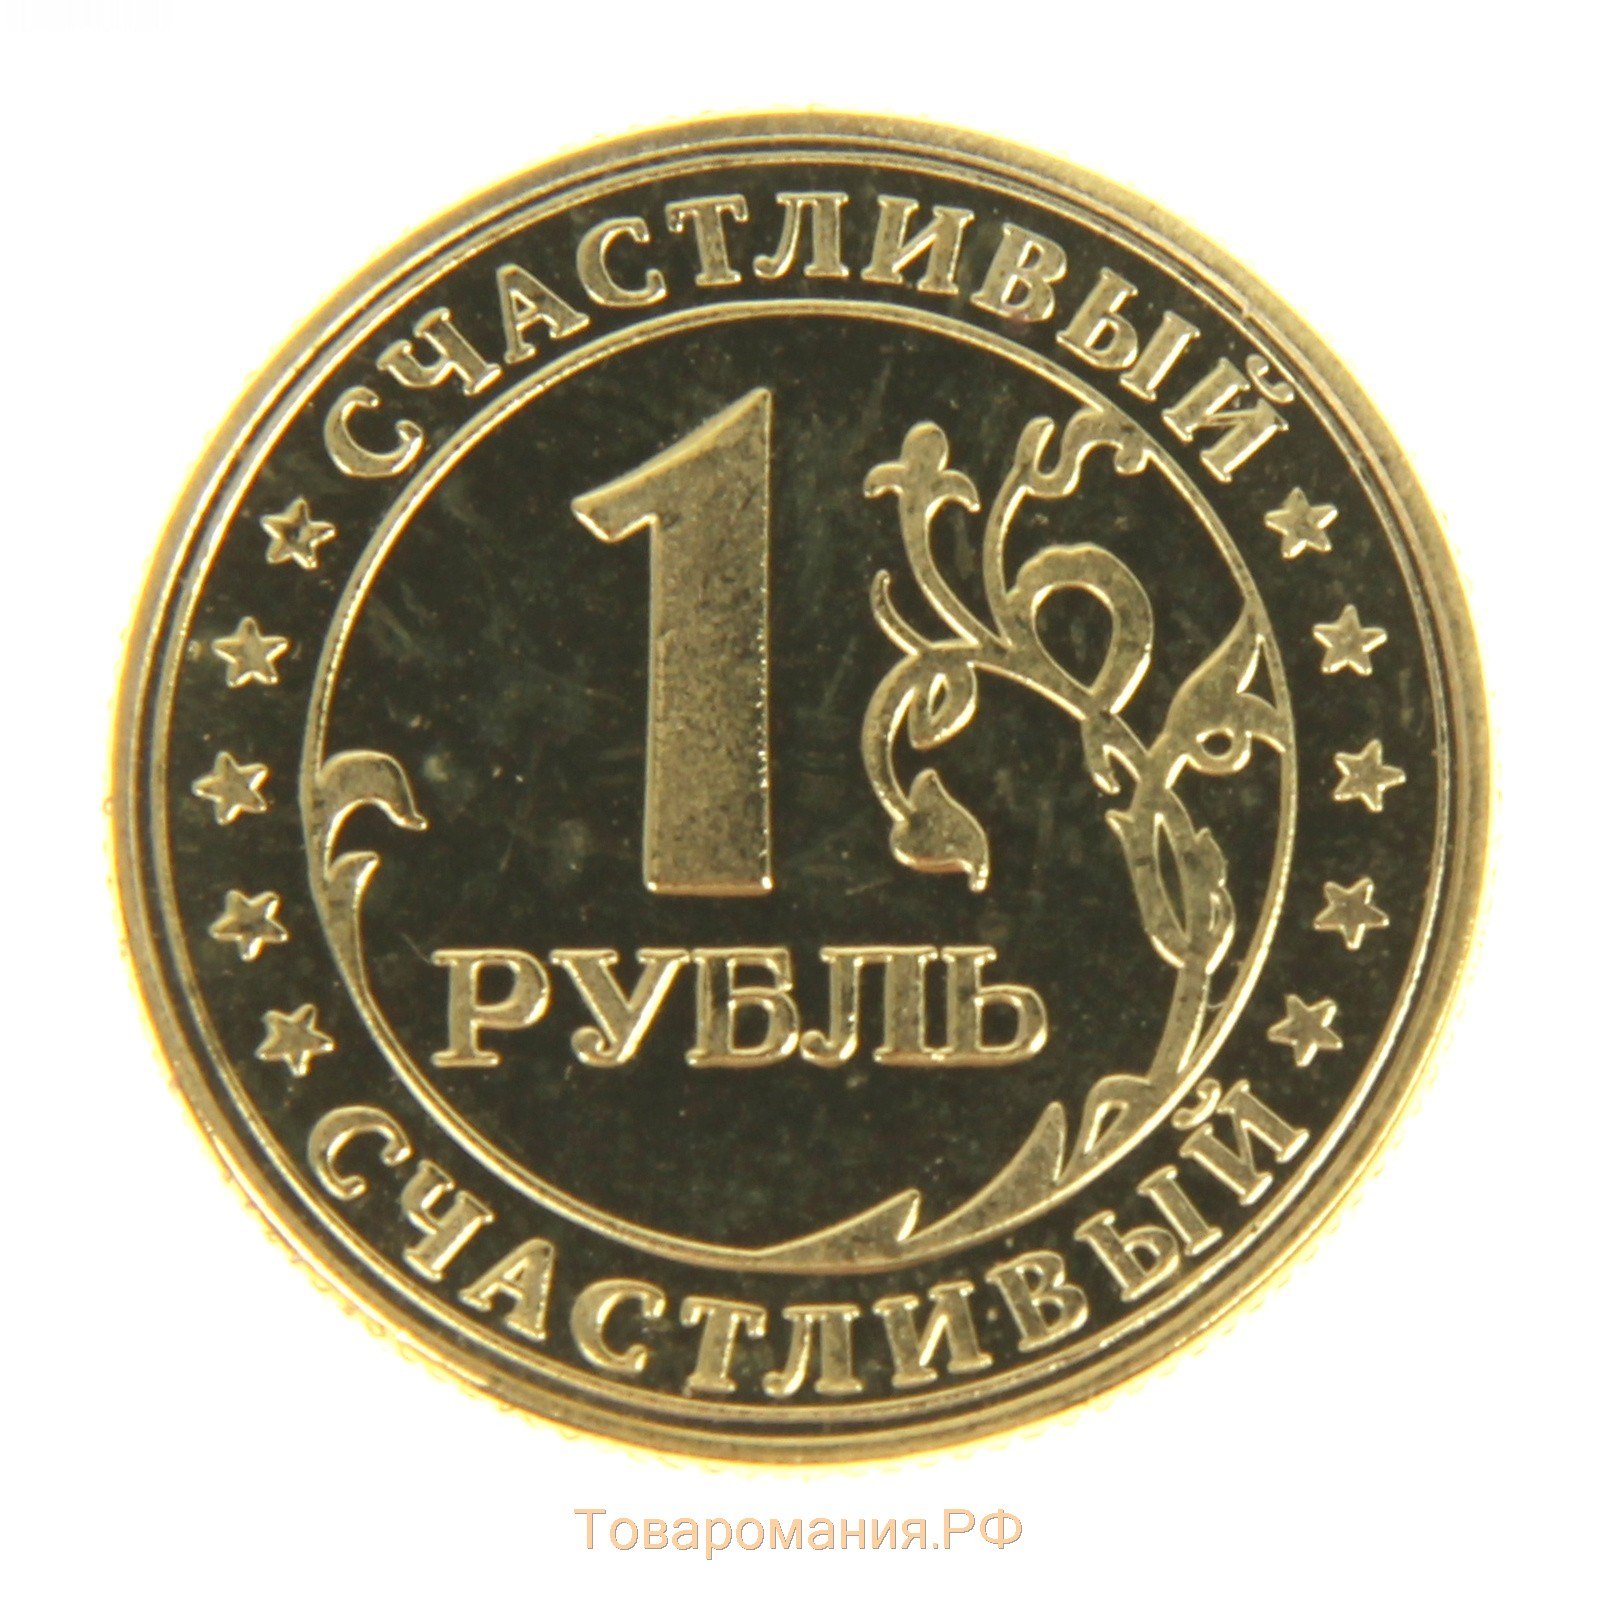 Ира рубль. Монеты. Изображение монетки. Рубль. Монеты для детей.